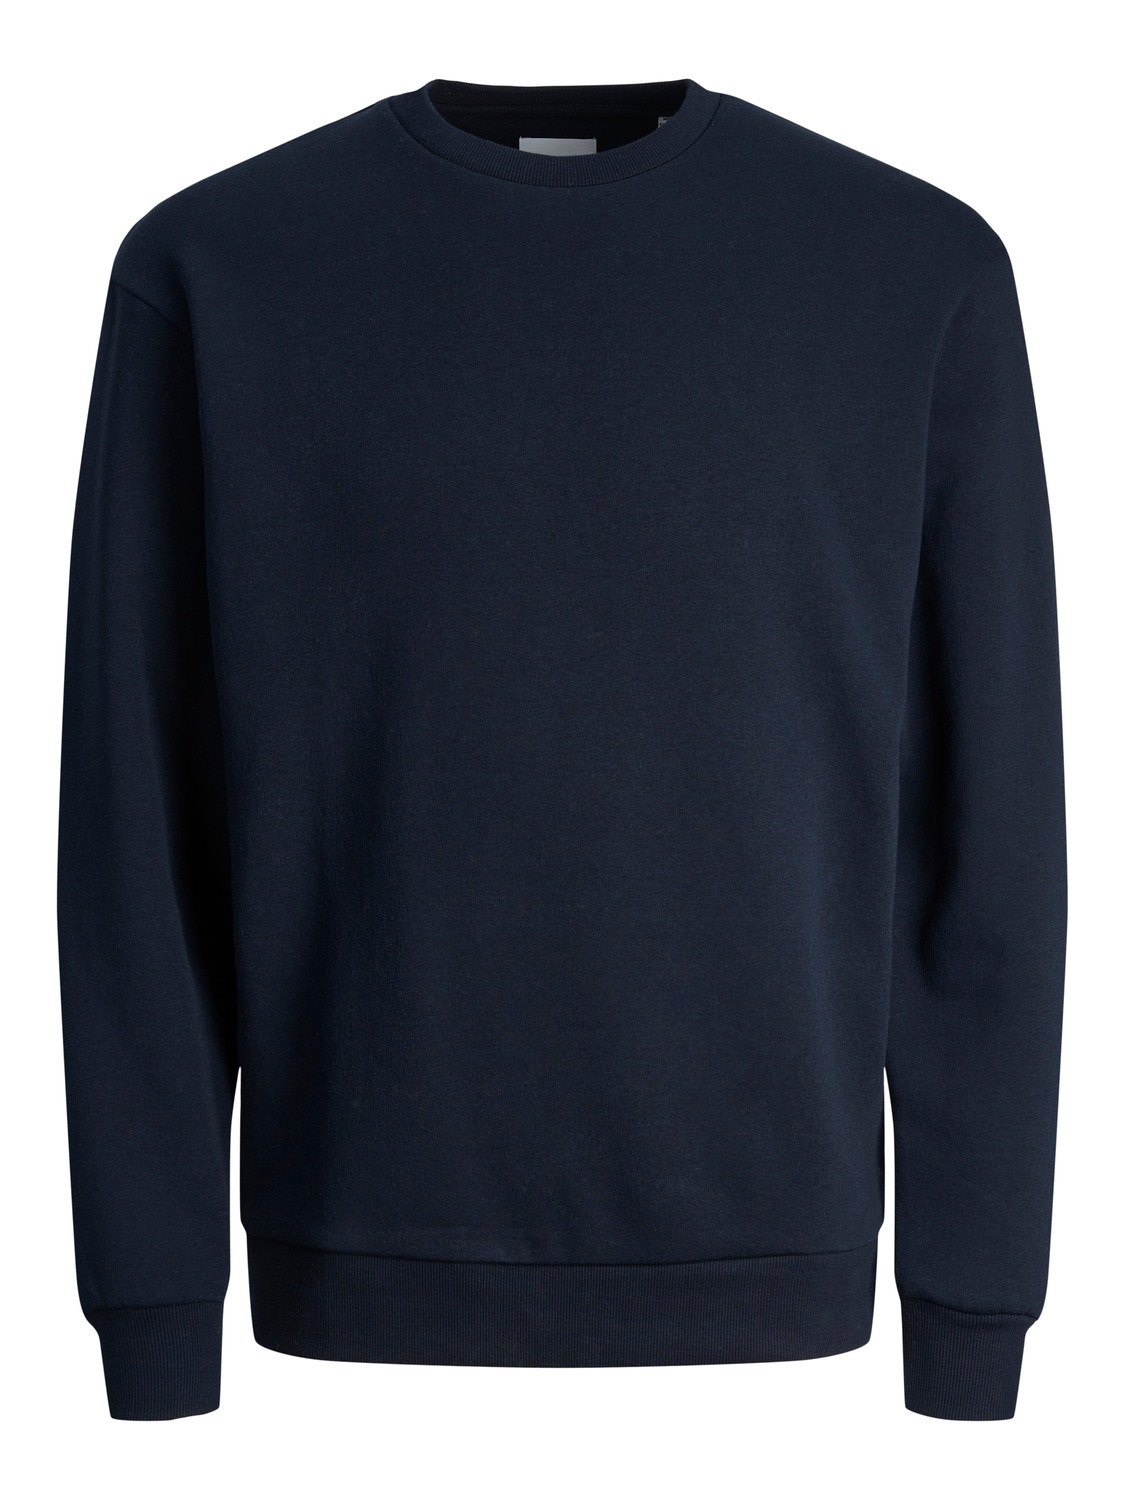 Jack & Jones Plain Crew neck Sweatshirt -Navy Blazer - 12249341